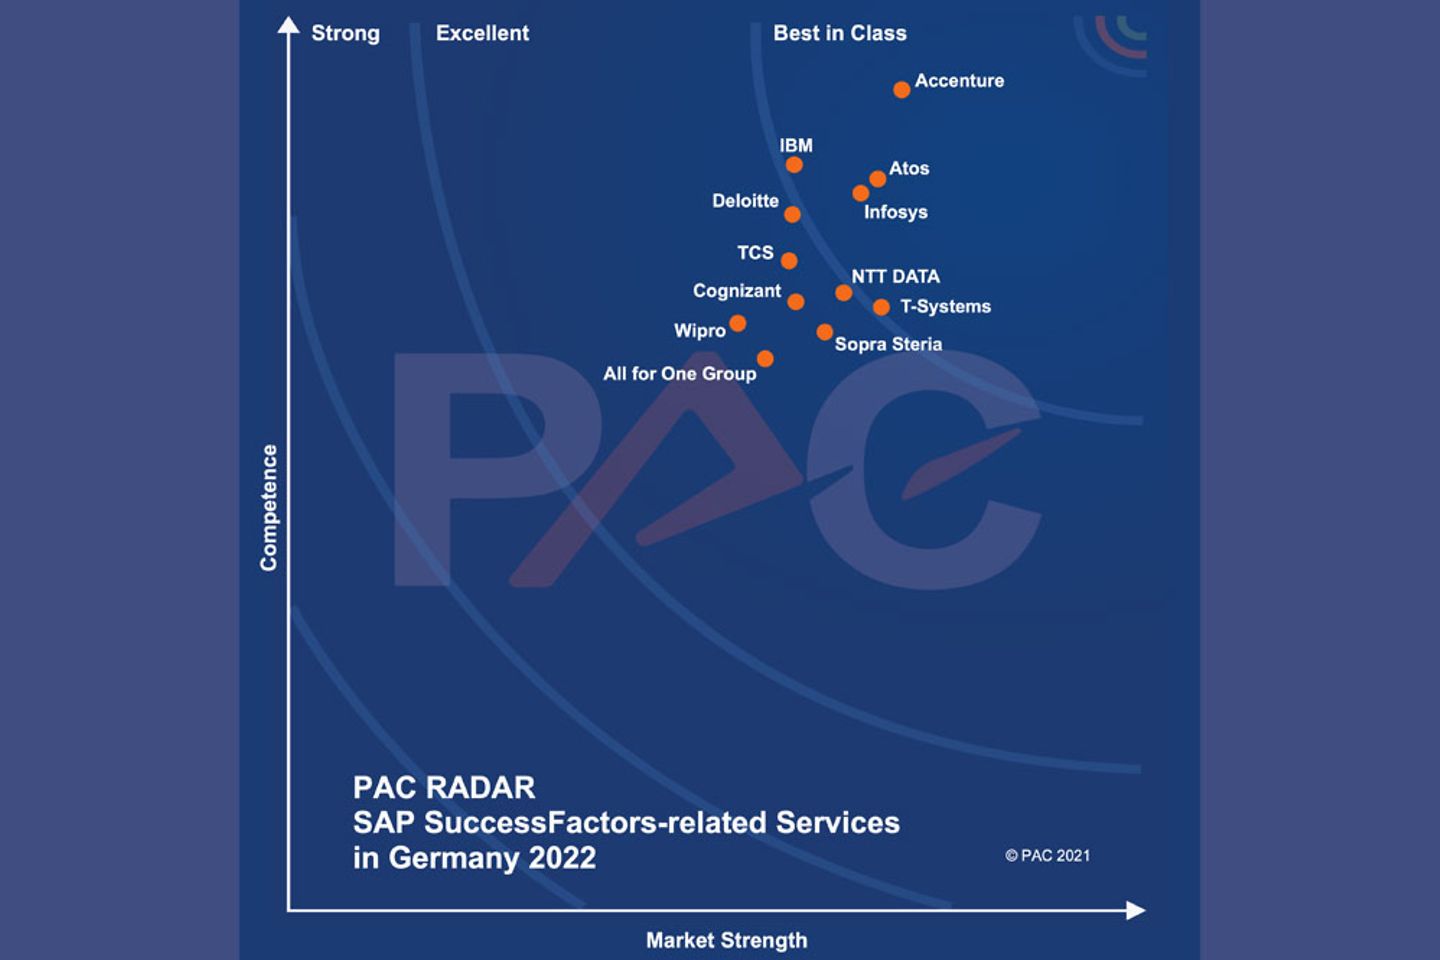 Graph SAP SuccessFactors Services PAC RADAR